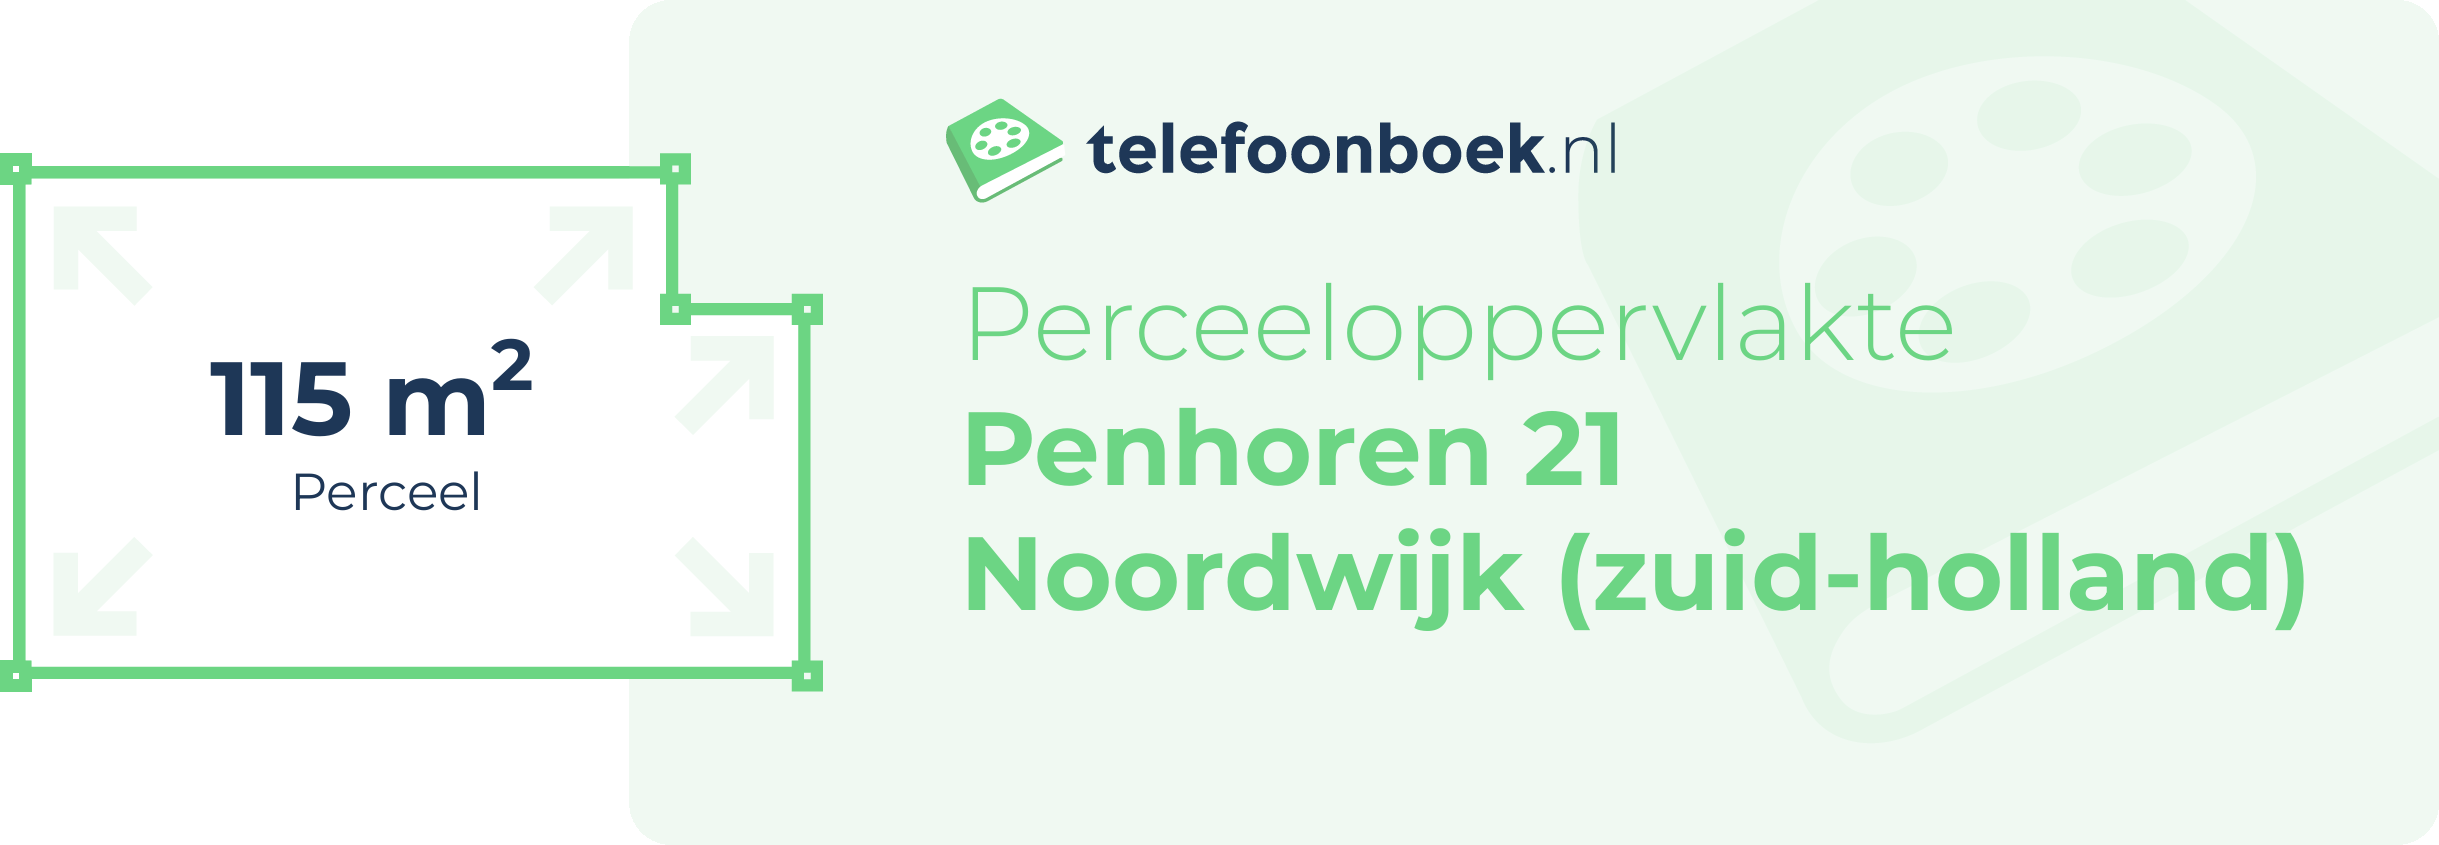 Perceeloppervlakte Penhoren 21 Noordwijk (Zuid-Holland)